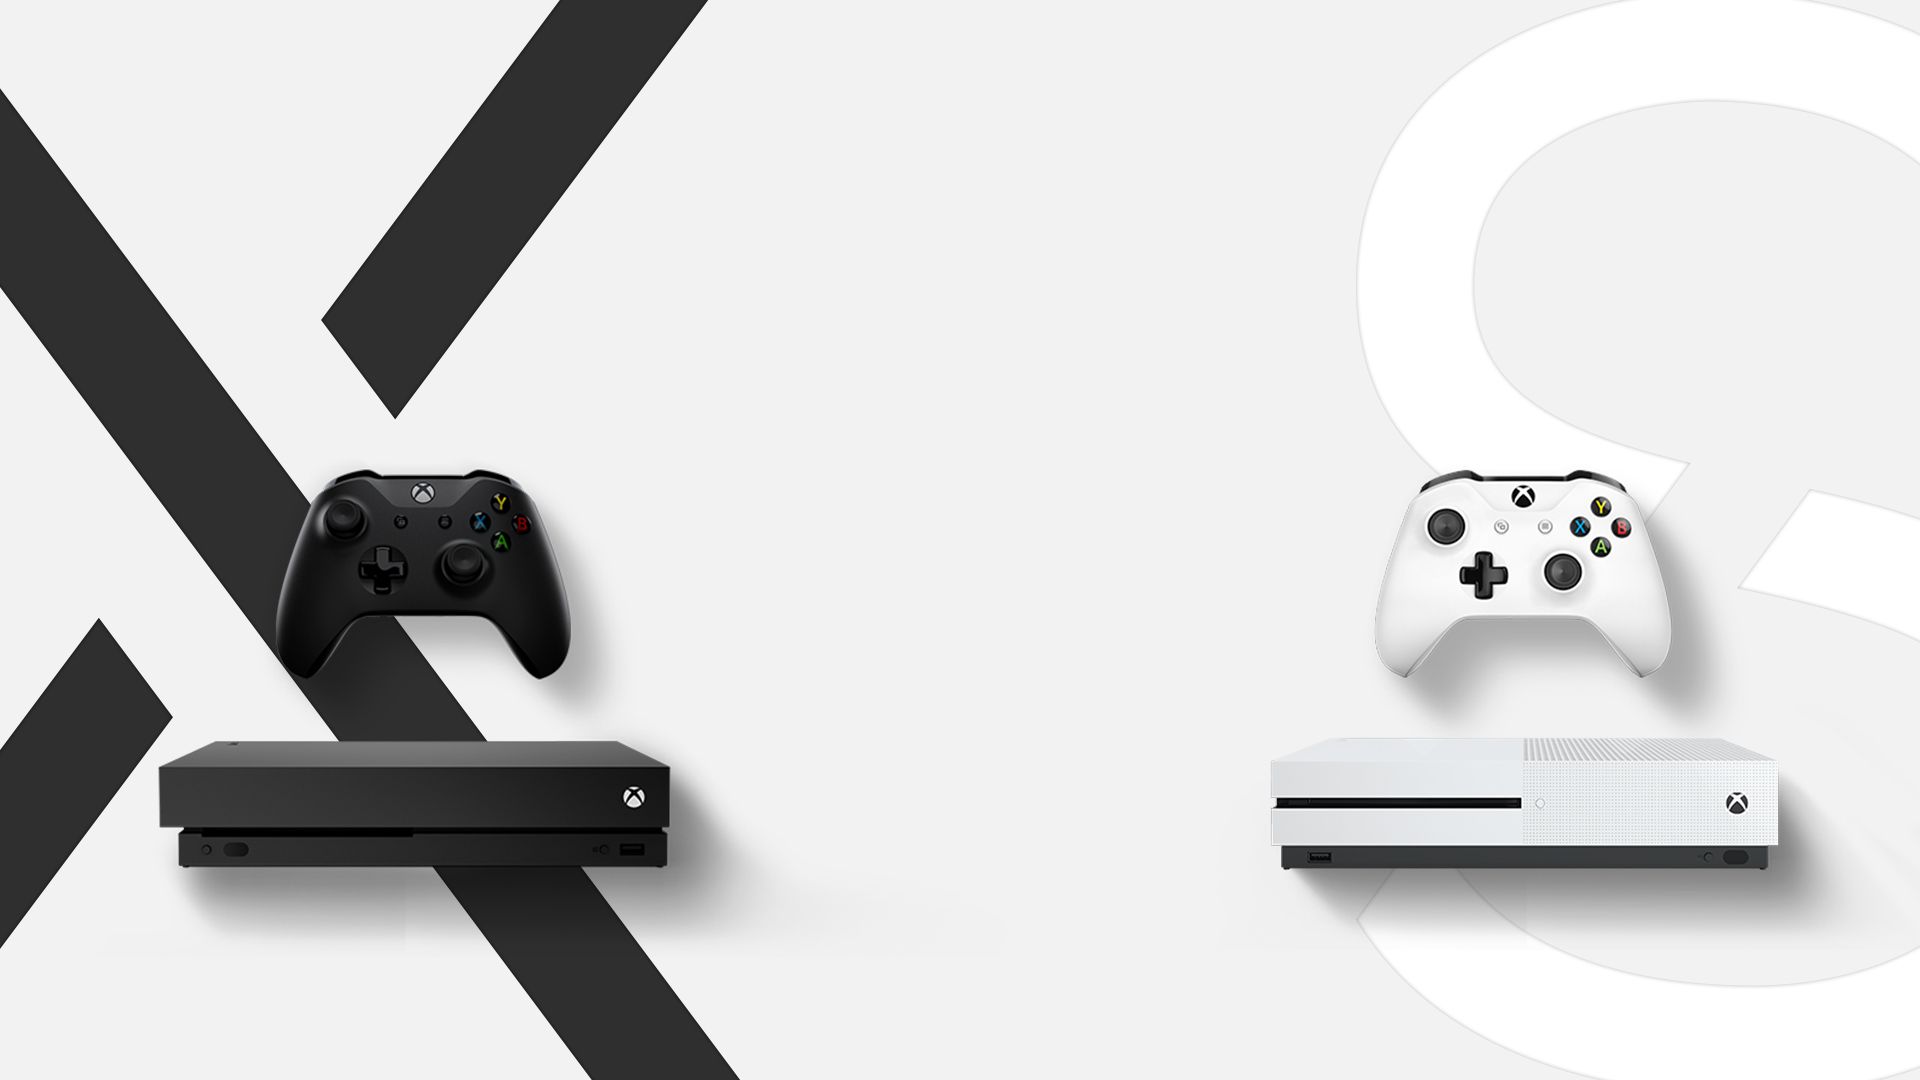 Çözüldü: Yeni nesil konsollar çıkarken Xbox One S almak mantıklı mıdır? |  Technopat Sosyal